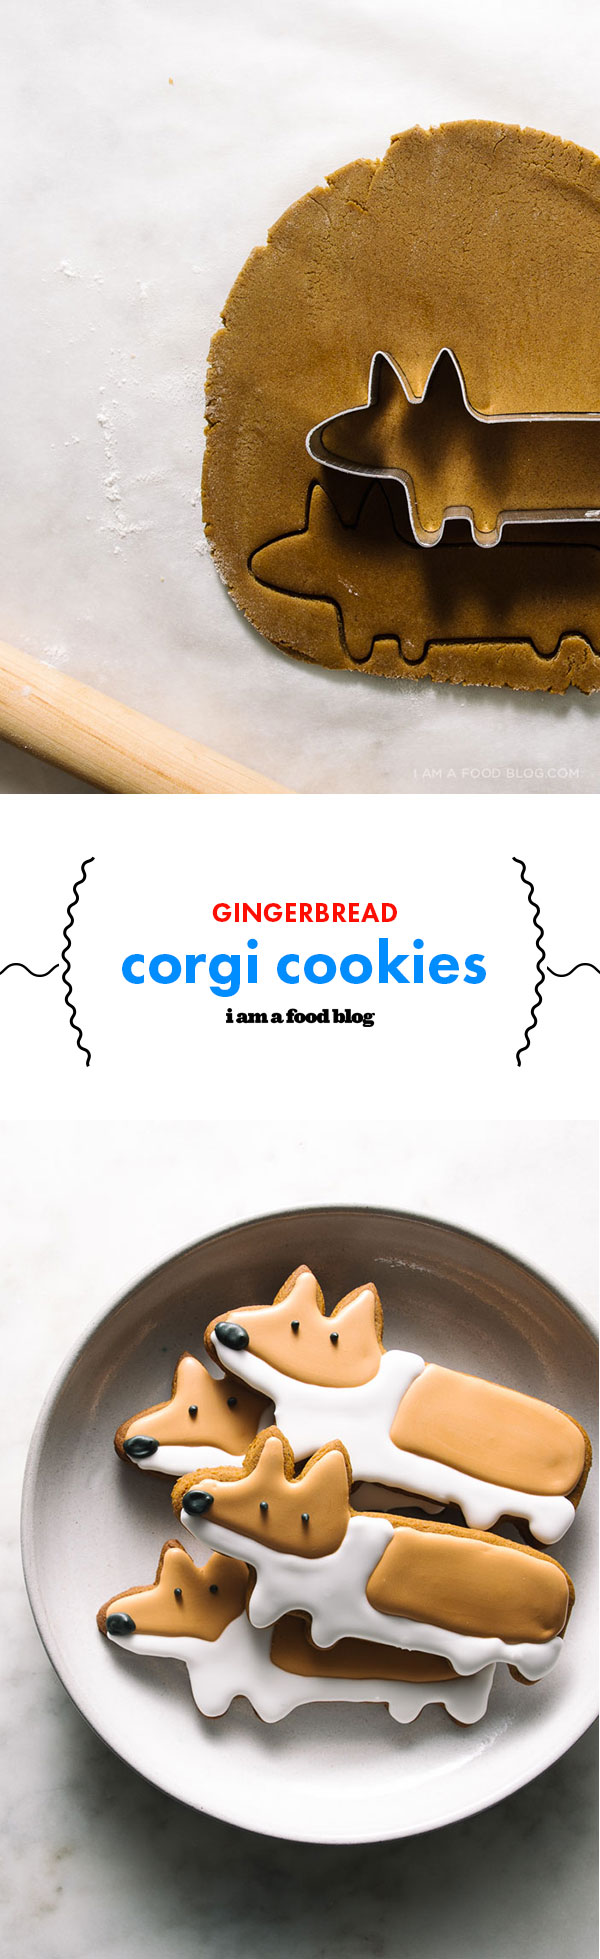 gingerbread corgi cookies | i am a food blog